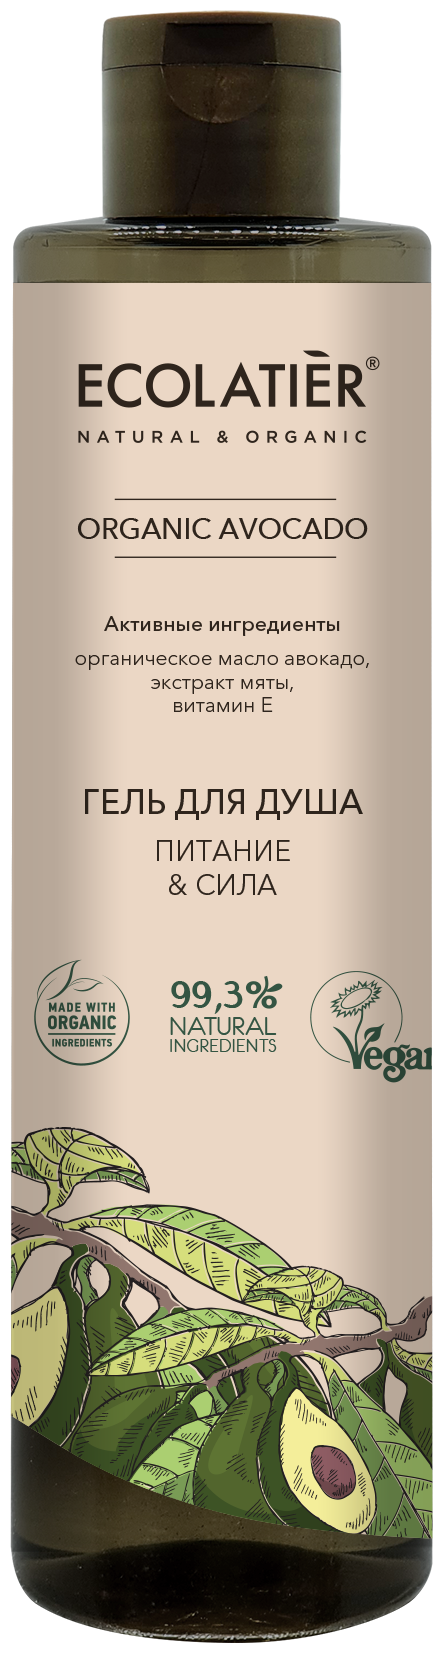 Гель для душа Ecolatier Organic Avocado Питание & Сила, 350 мл, 350 г